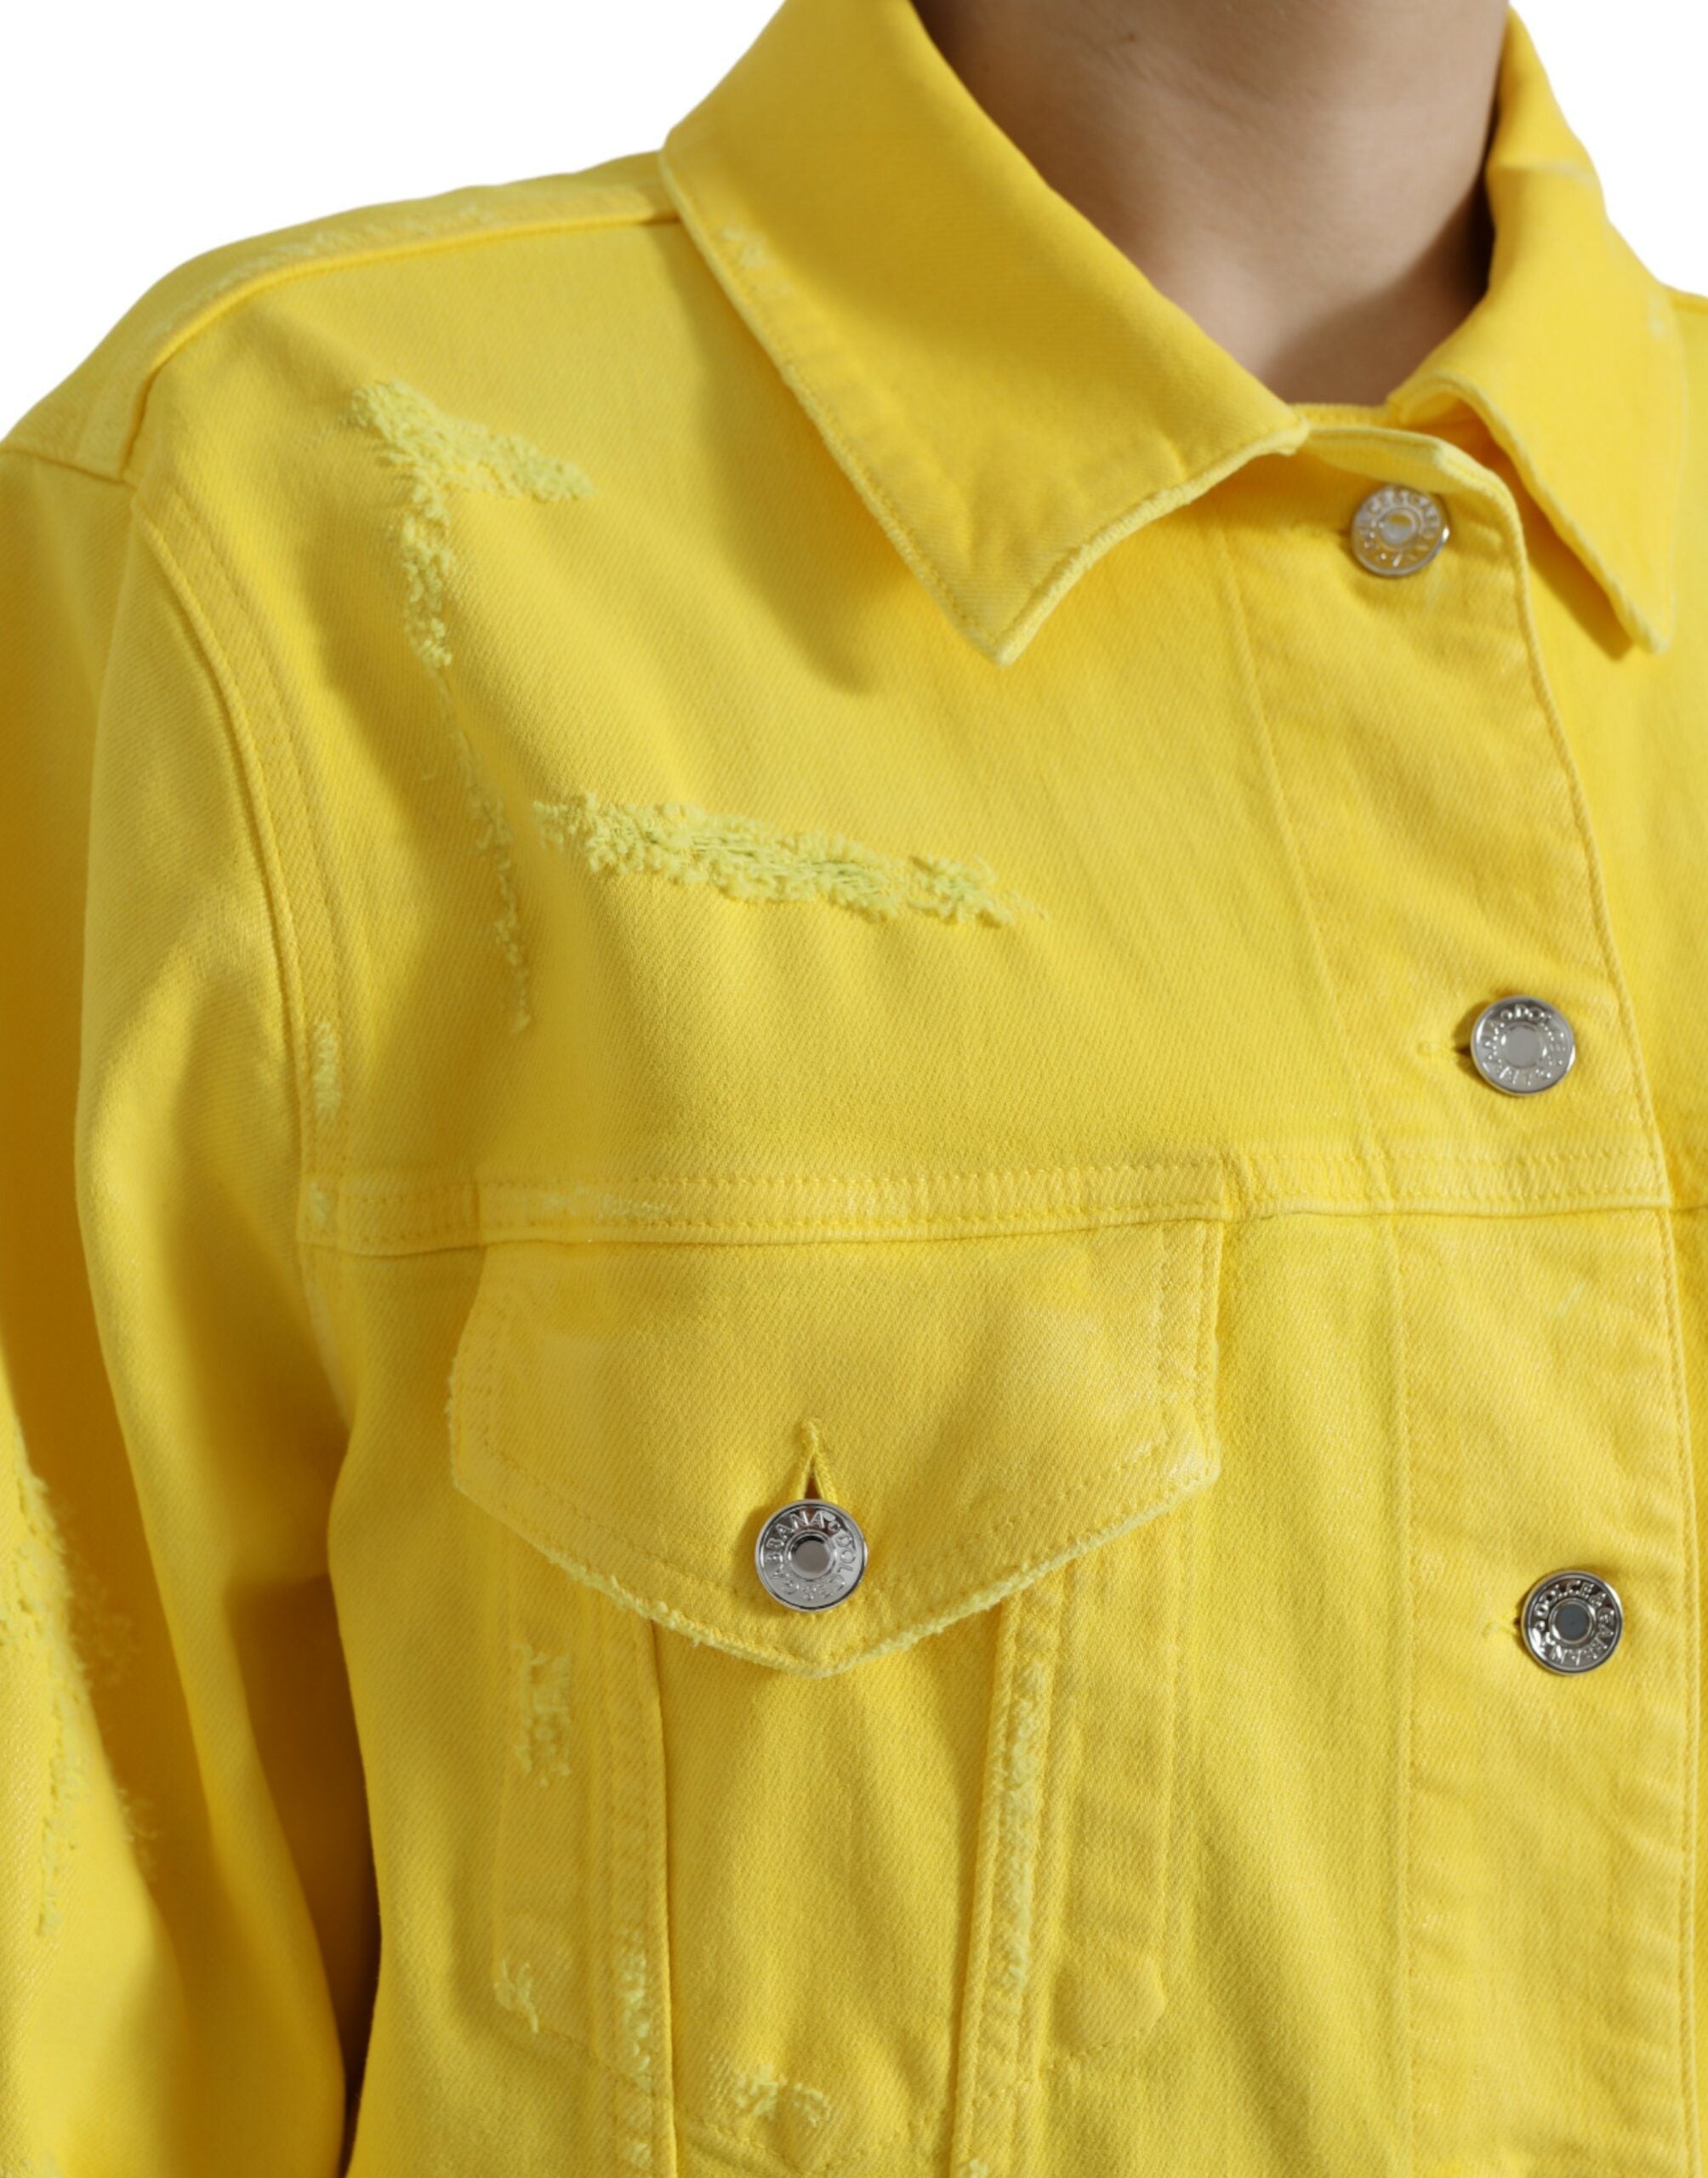 Dolce & Gabbana Chic Yellow Denim Button-Down Jacket